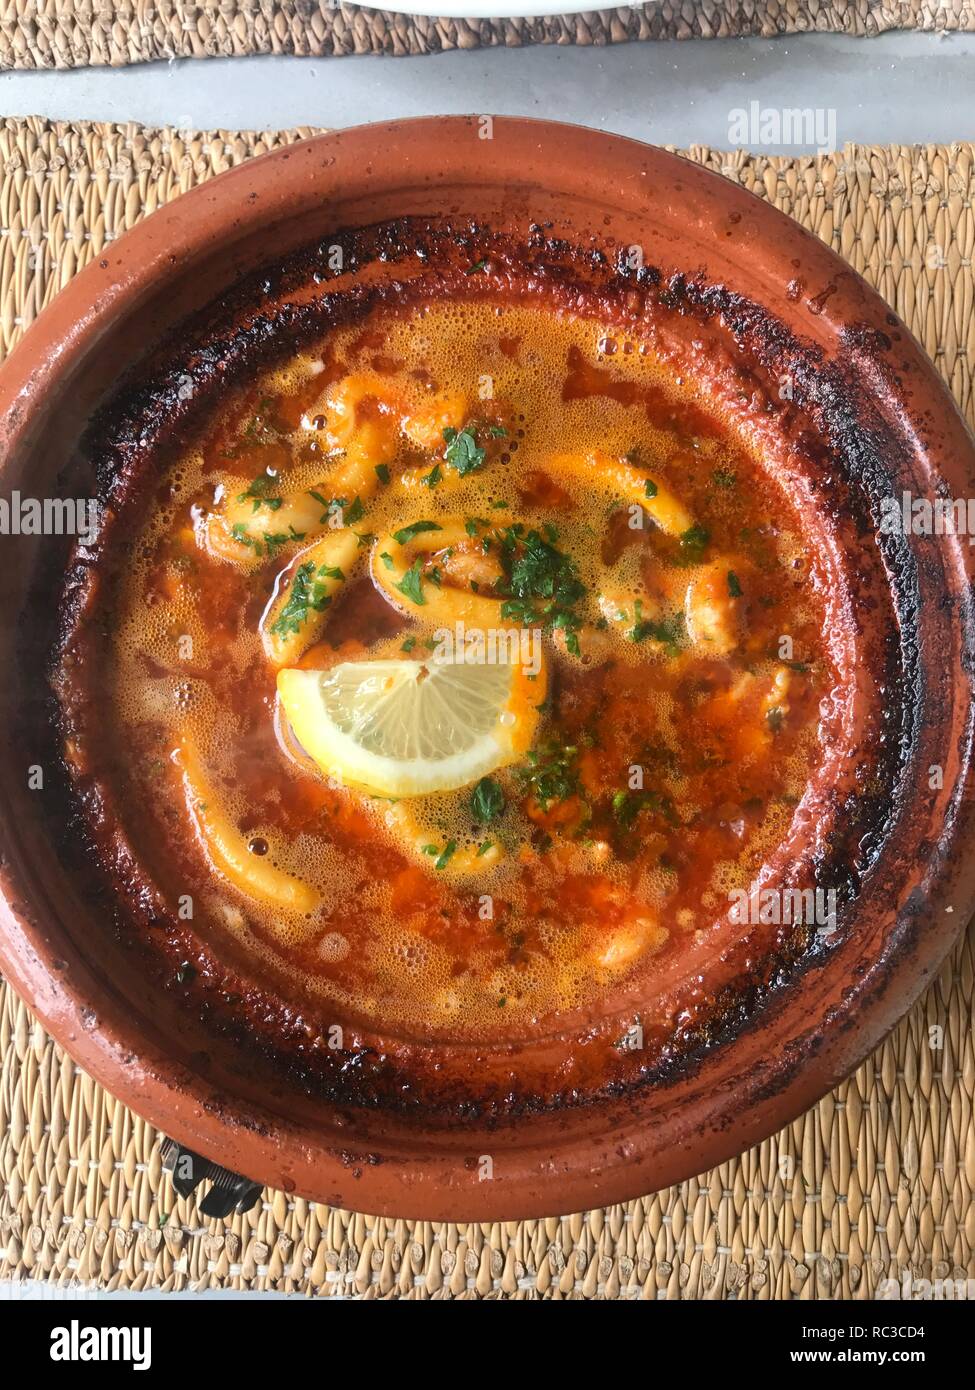 Marokkanisches Essen in Ton Teller Stockfoto